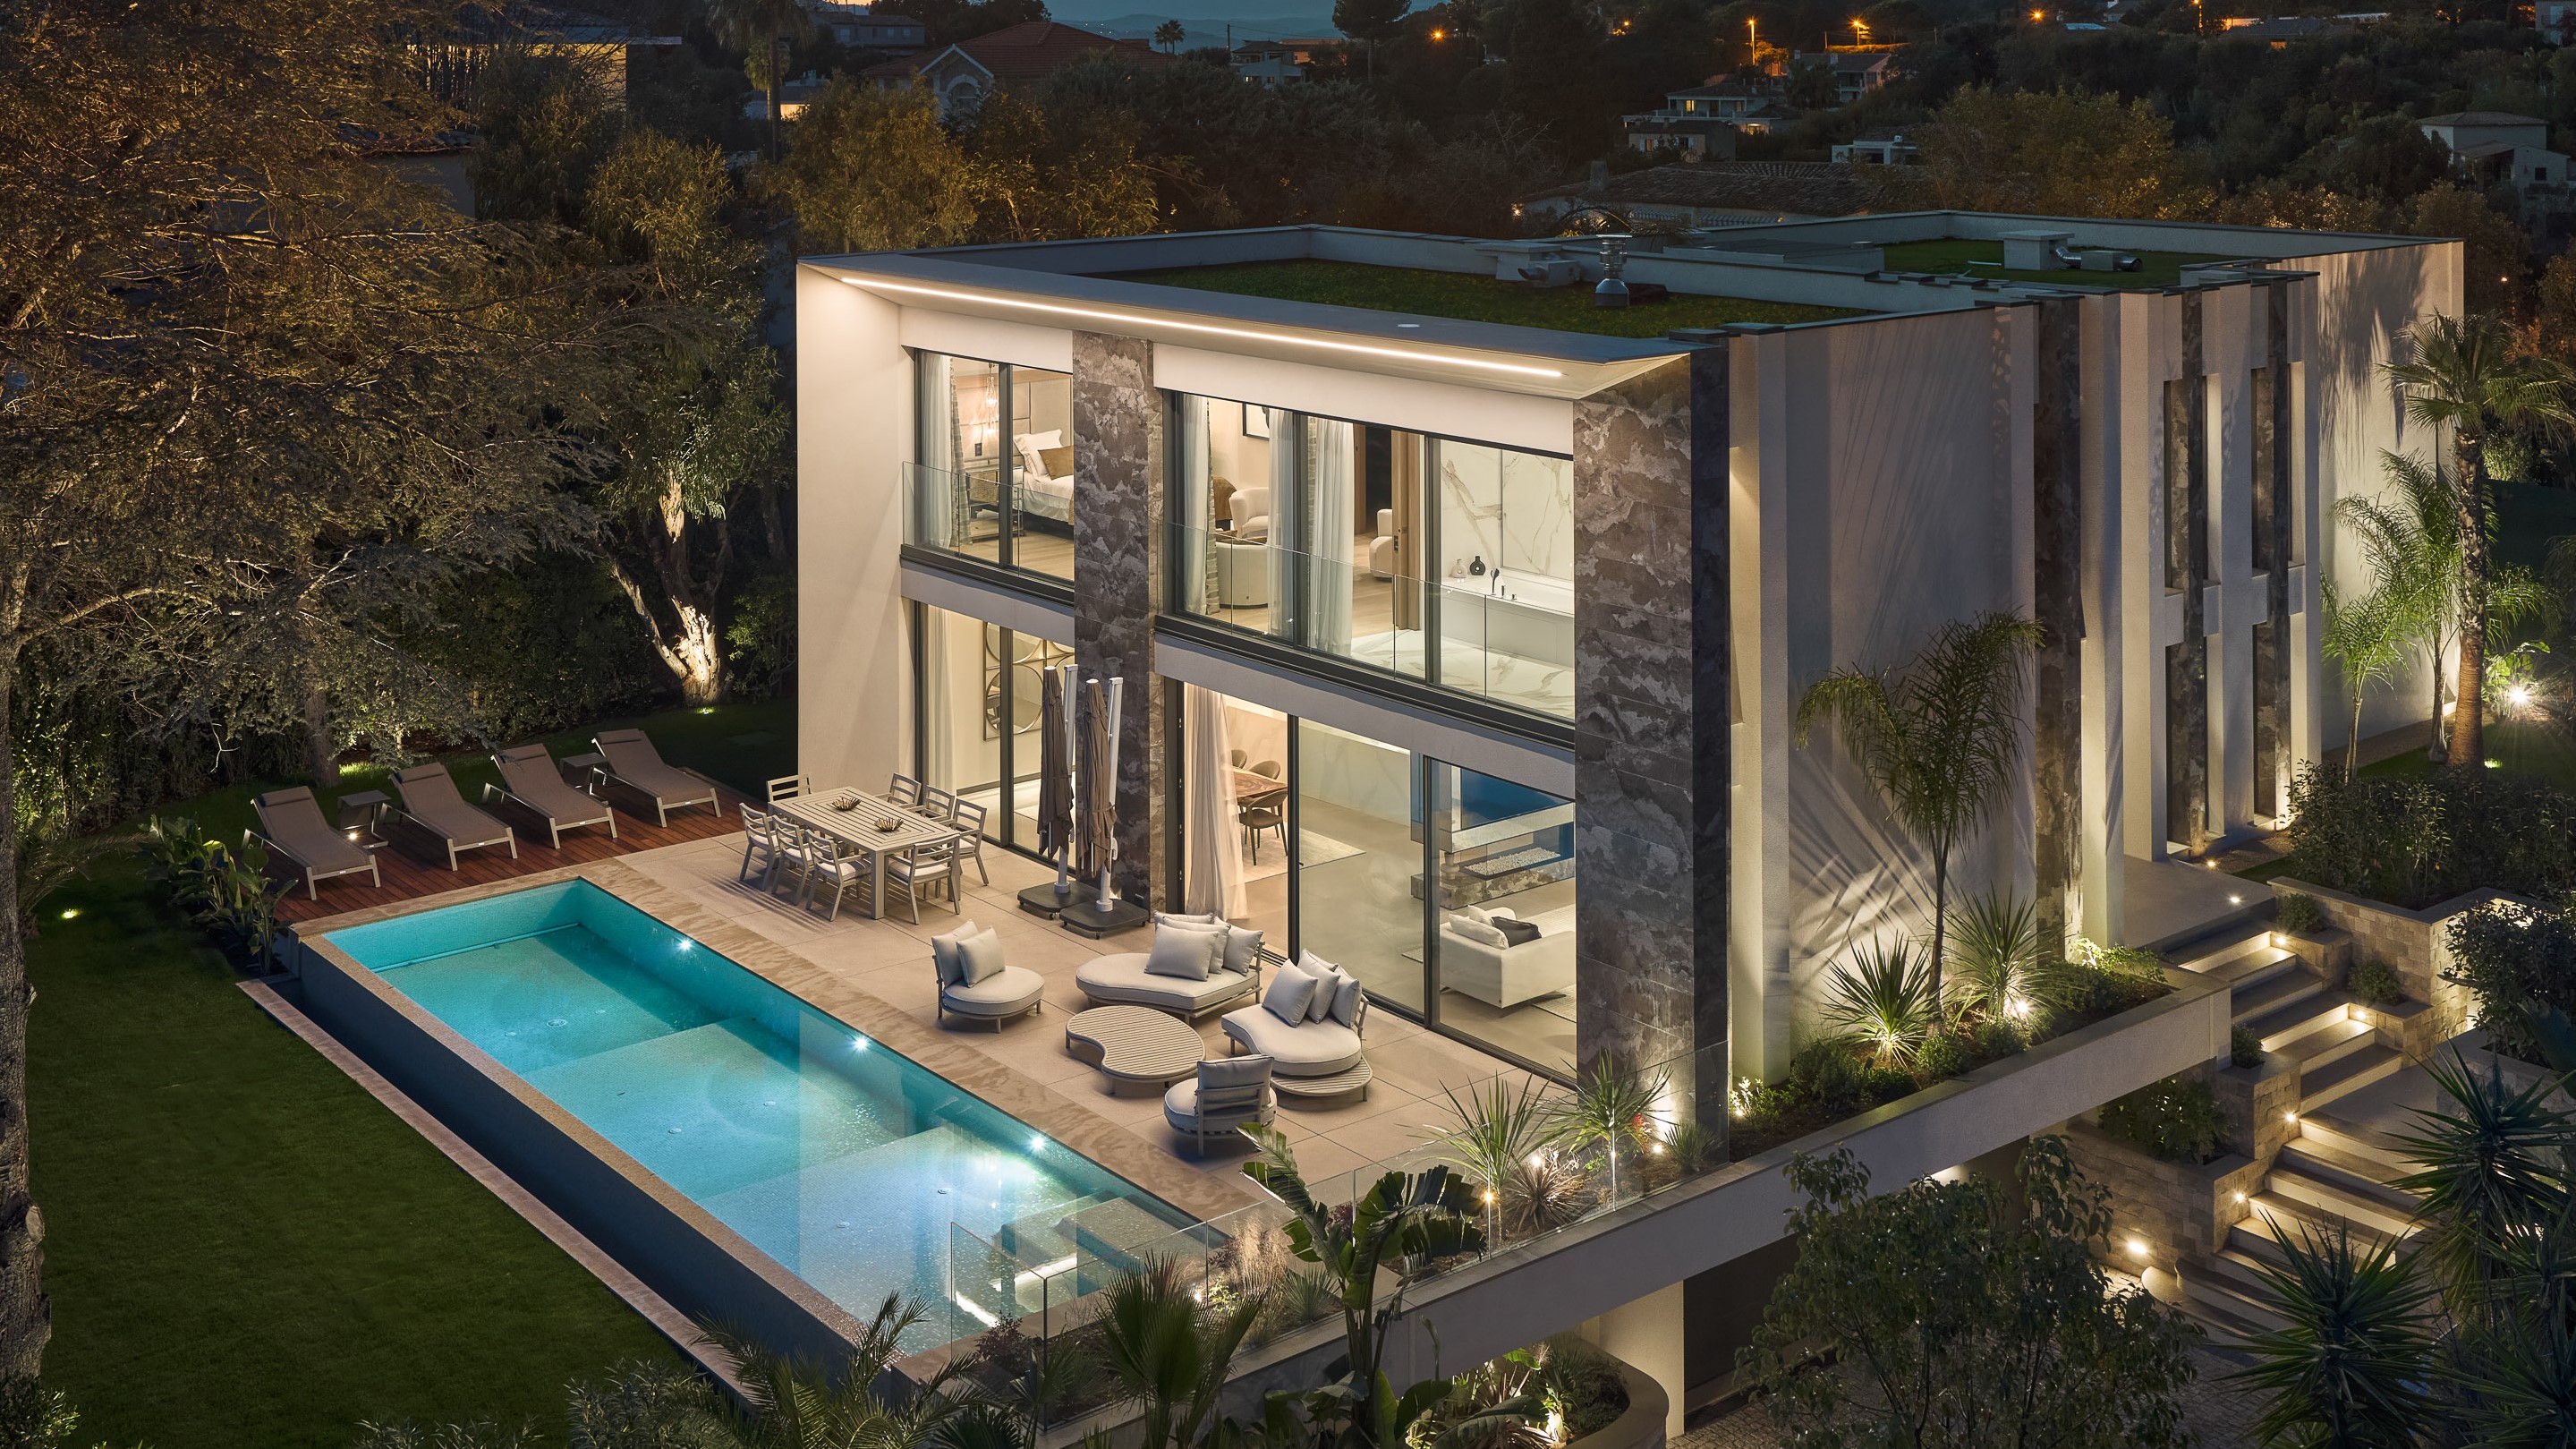 Immobilier de prestige. L'Agence Europa vous présente une villa d'exception pieds dans l'eau à Cannes - Côte d'Azur